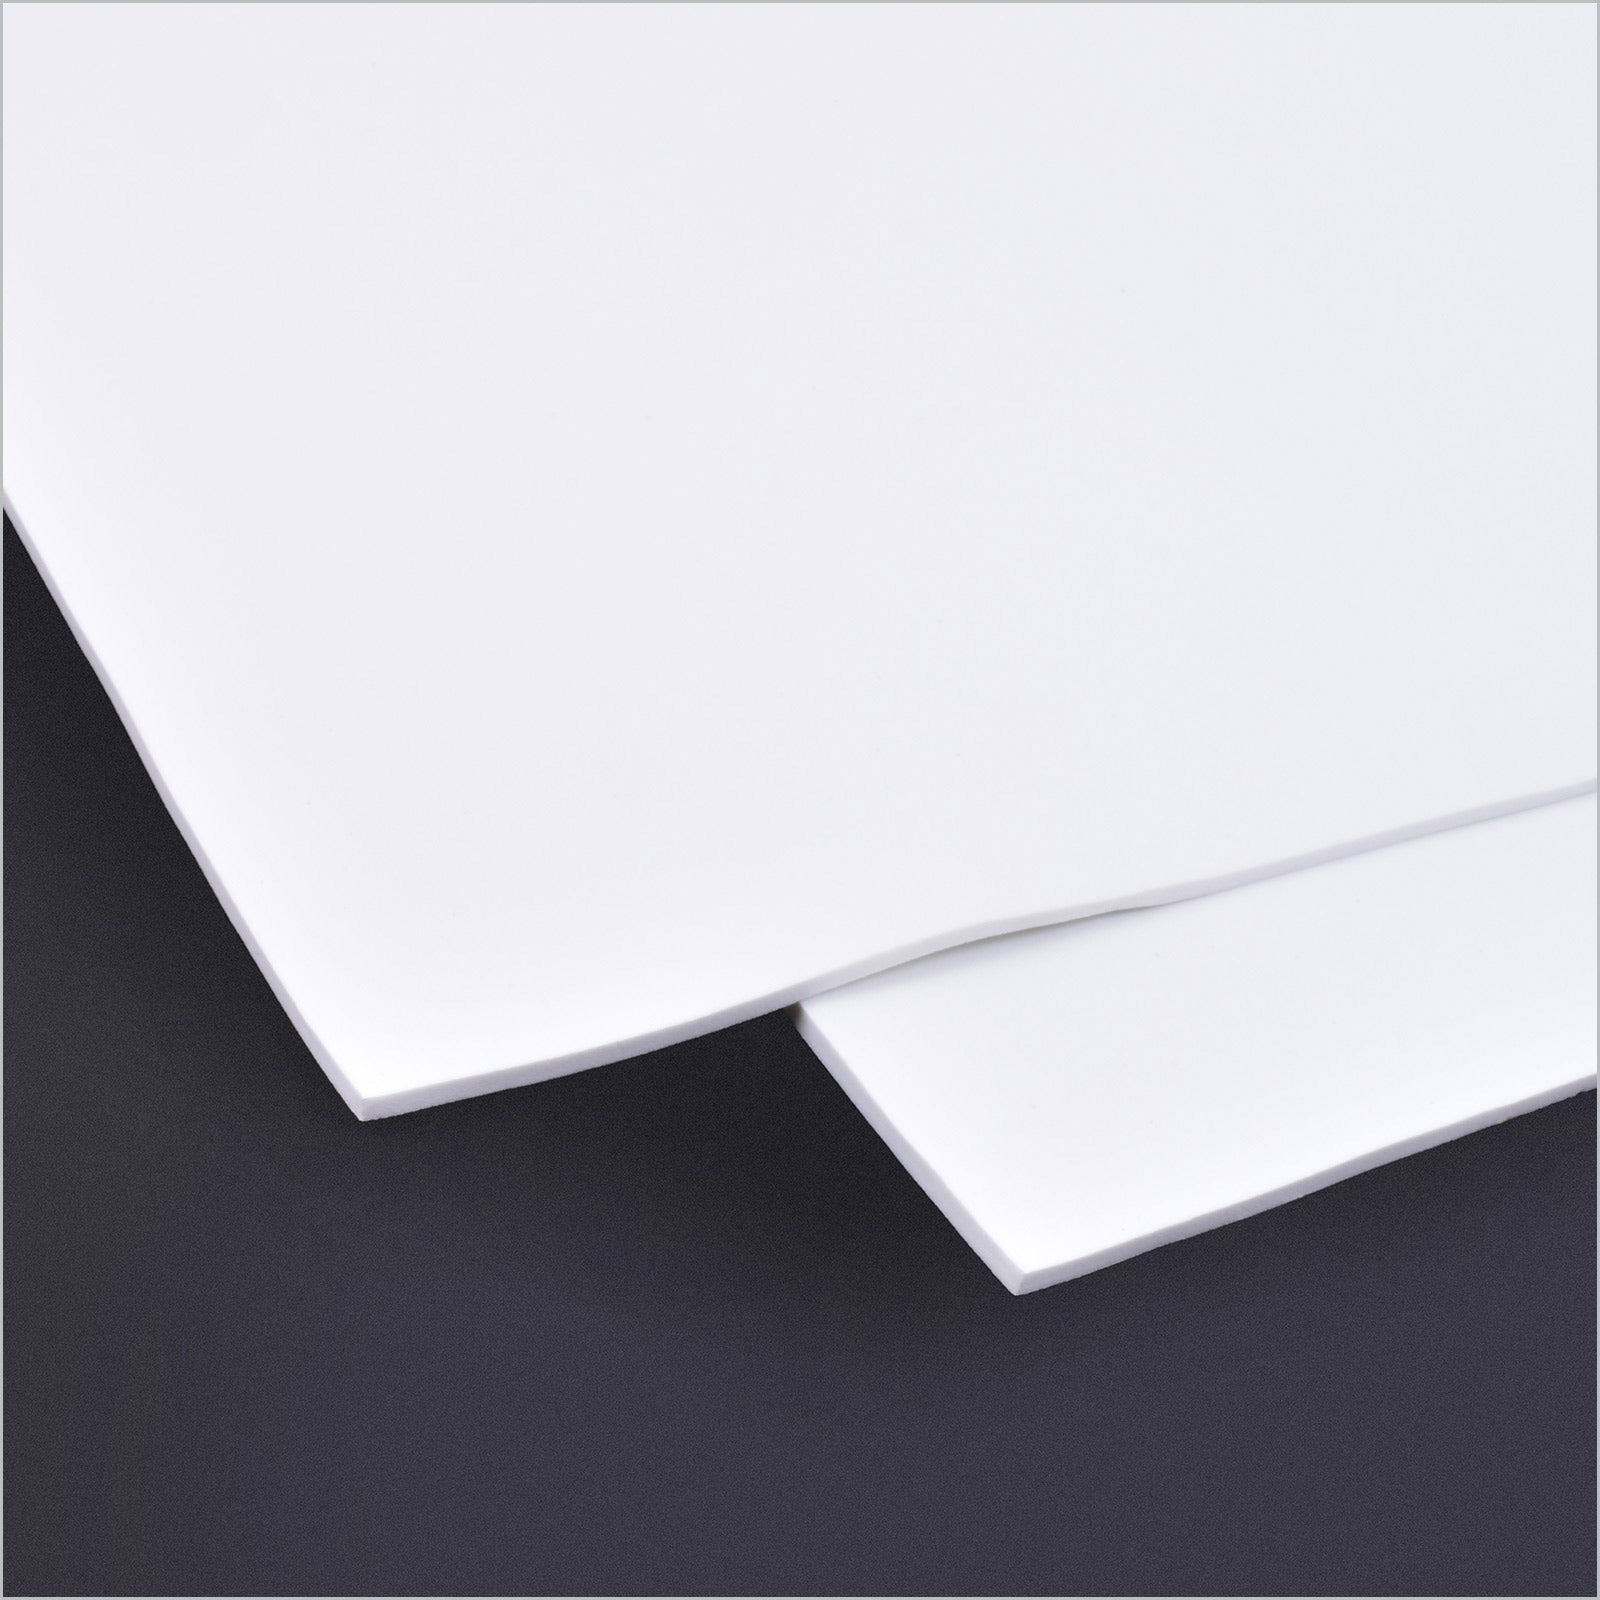 Micro - Mark CosFoam, EVA Foam, White, 4mm Thick, 2 Sheets - Micro - Mark Scenery